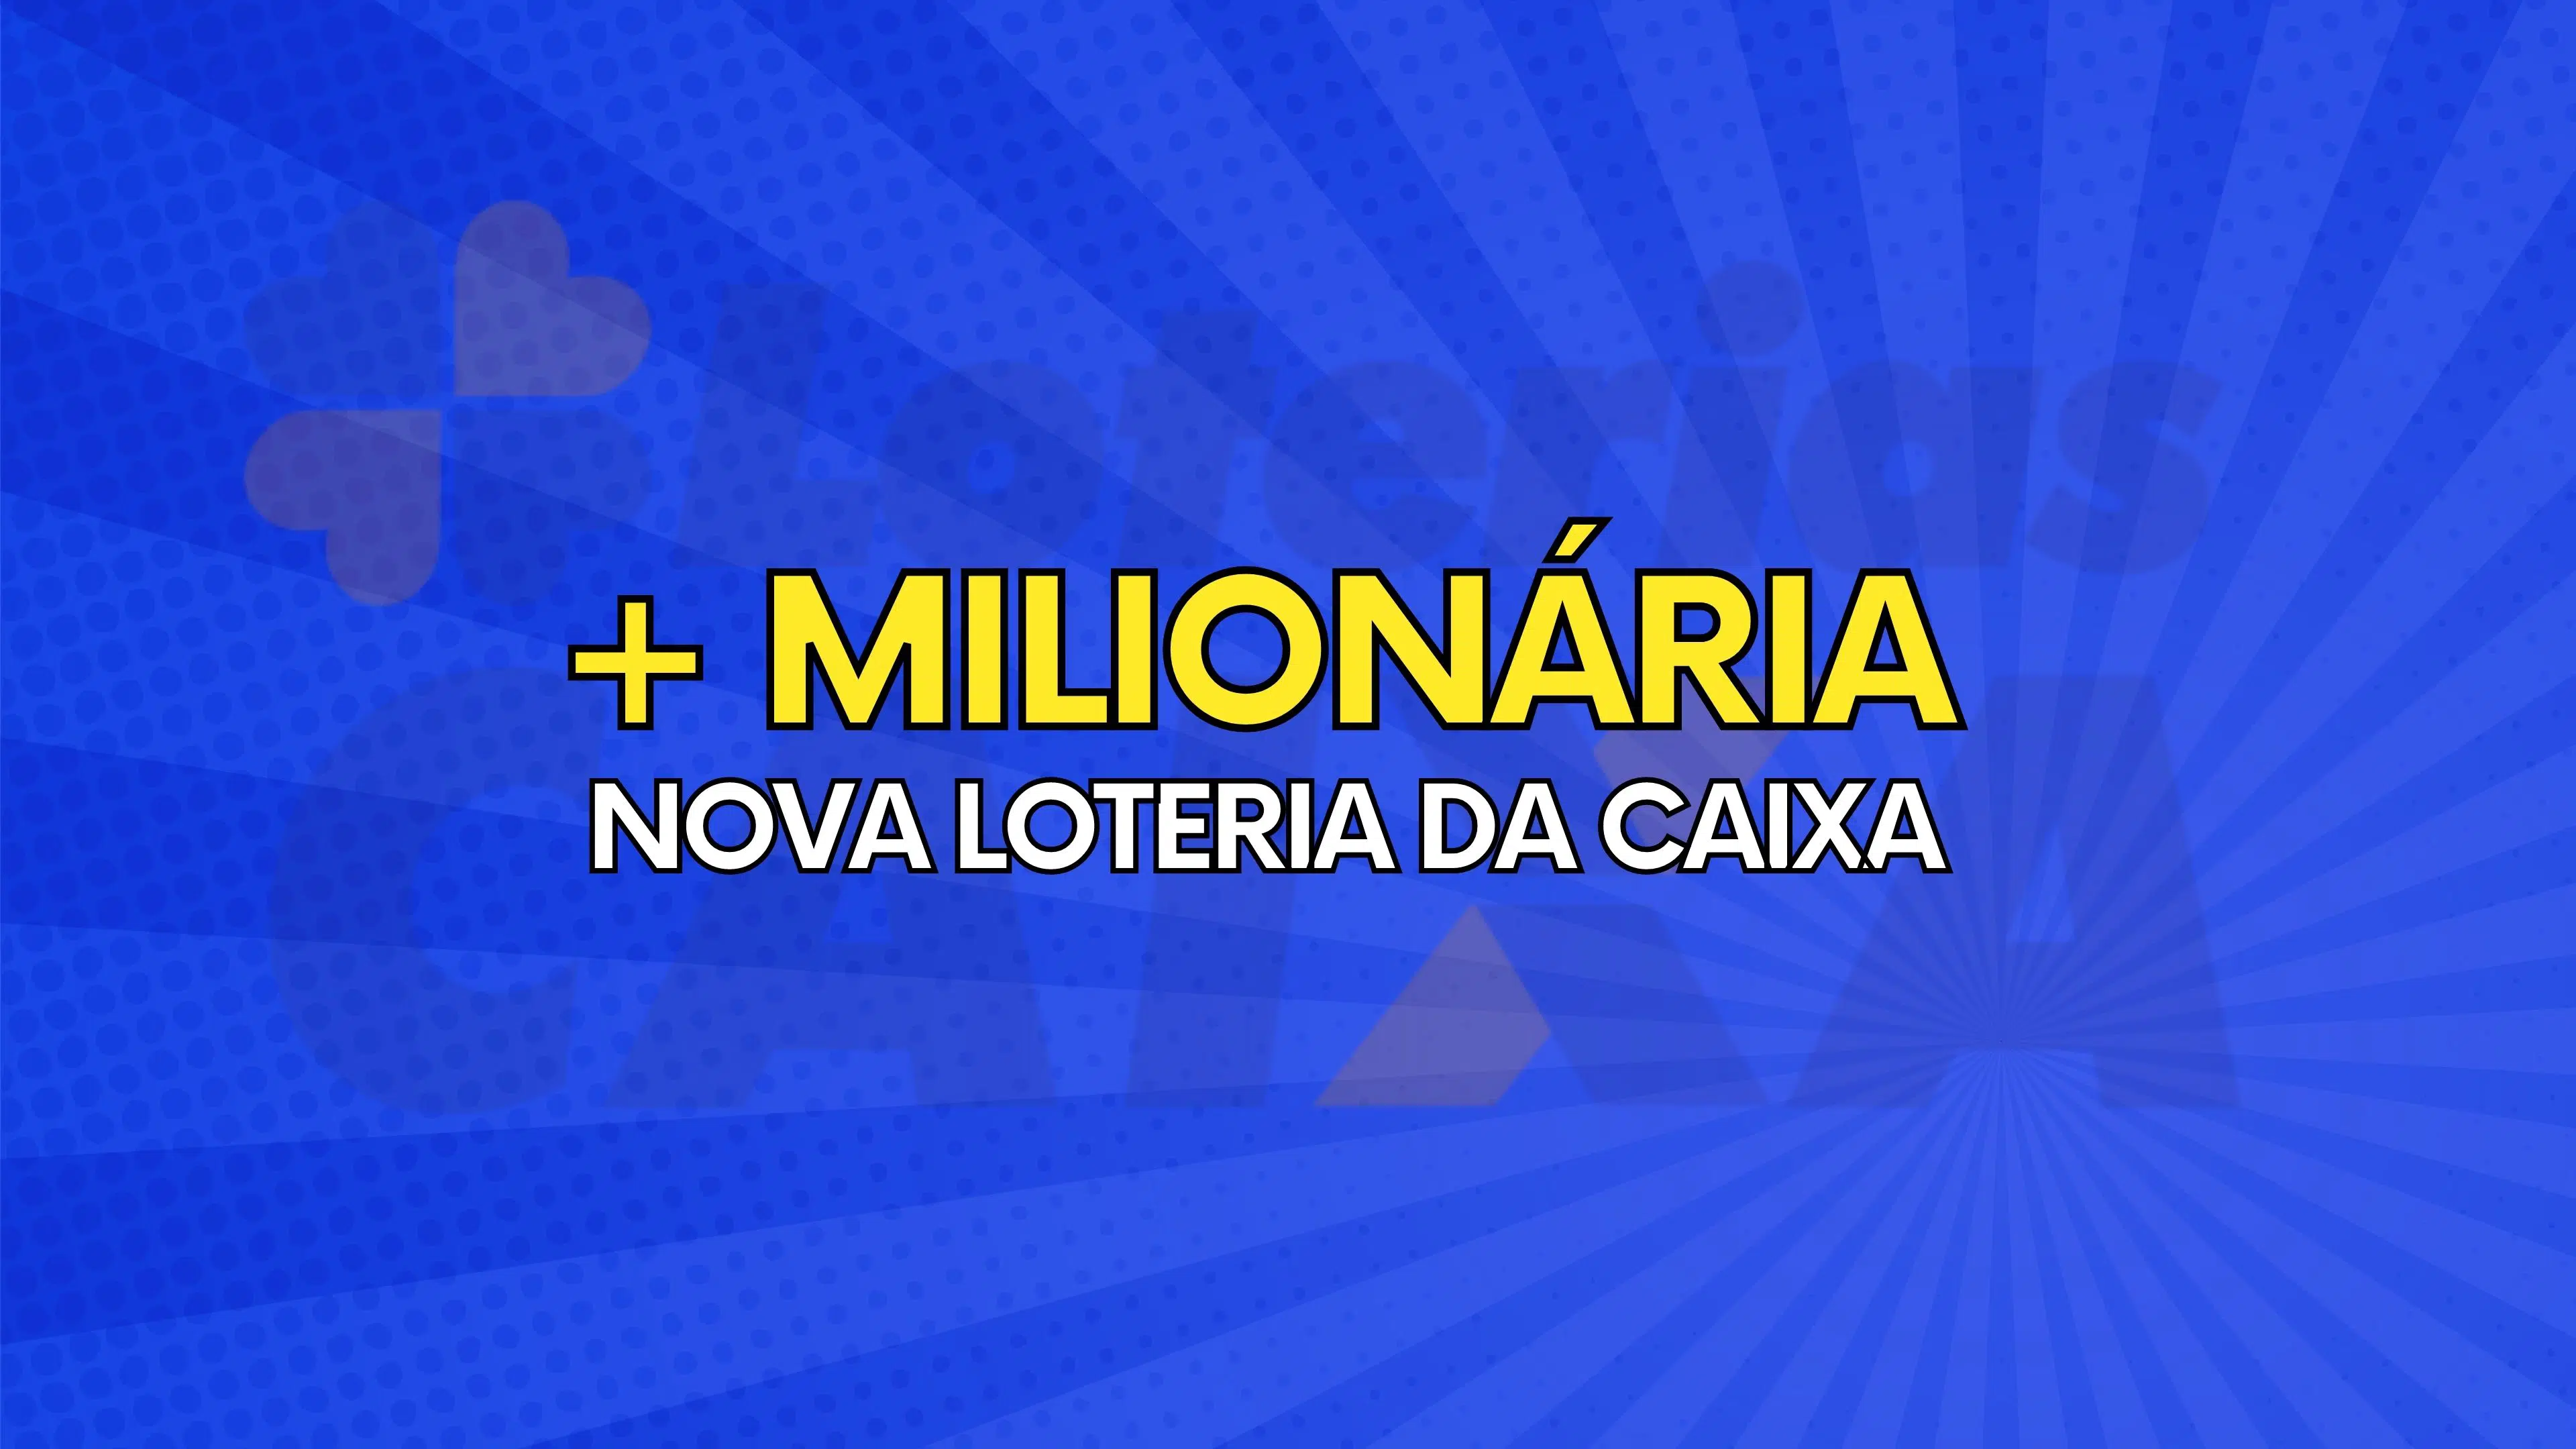 + milionaria nova loteria da caixa